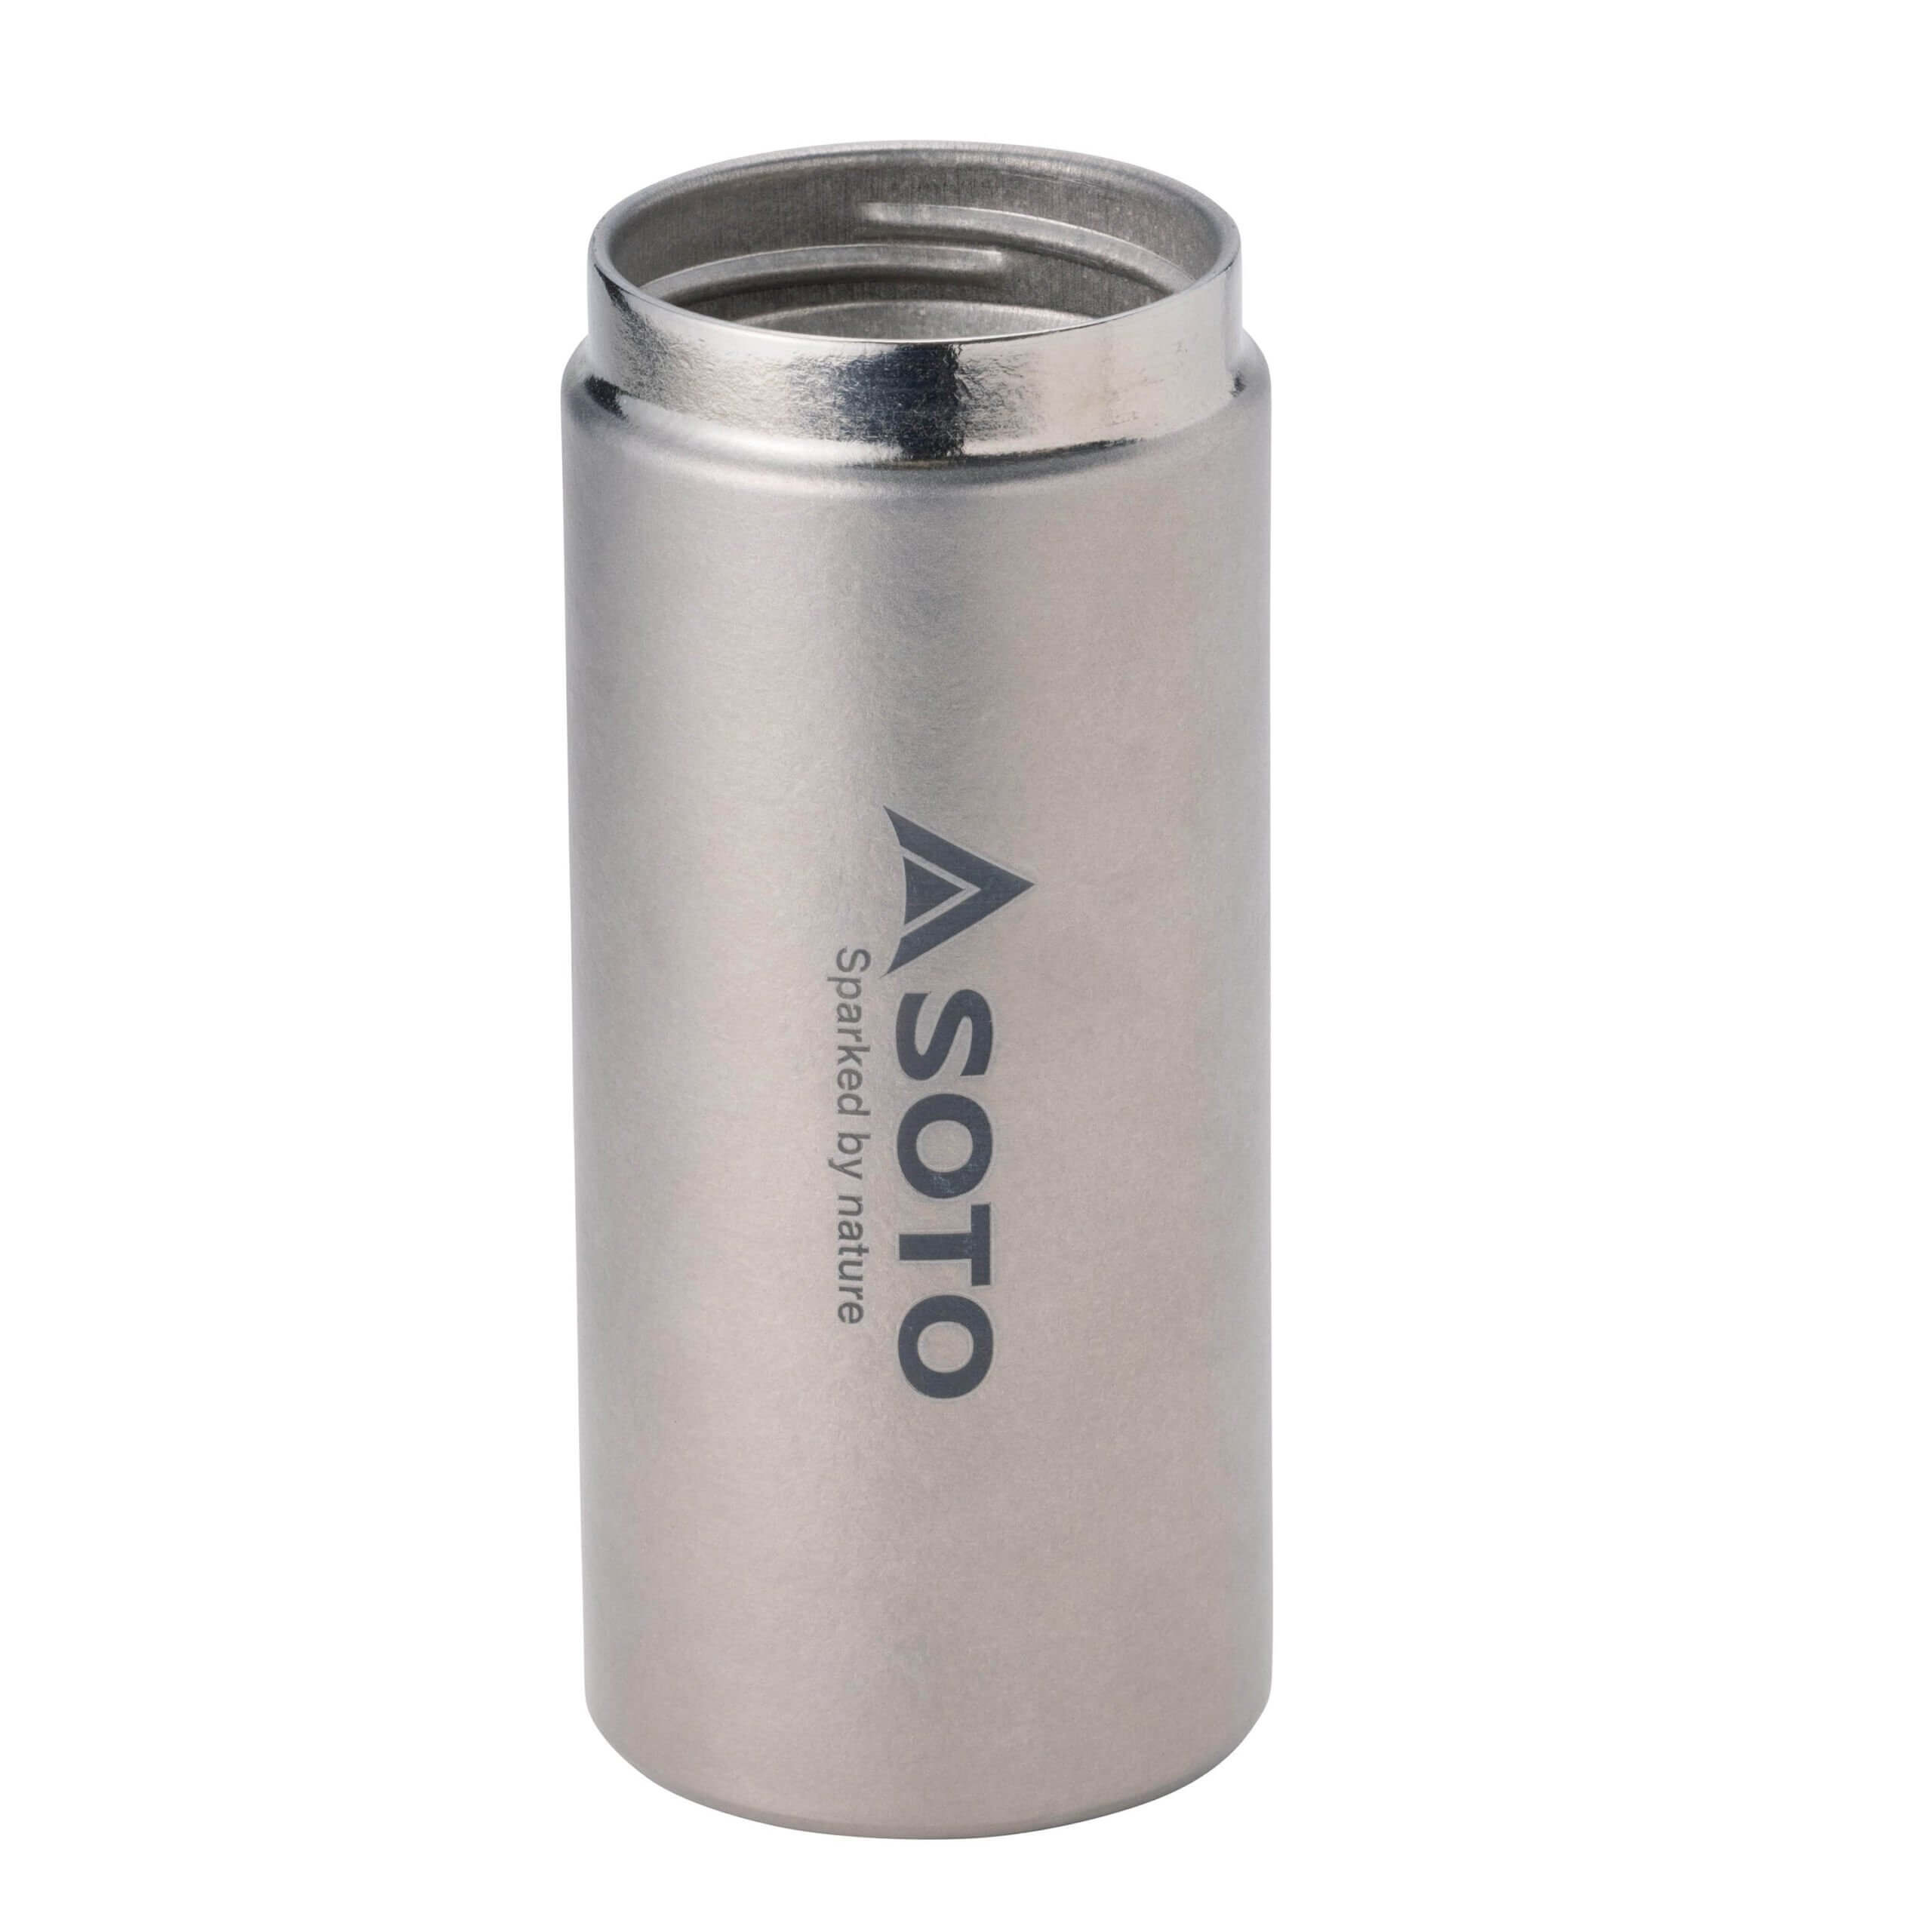 Soto Aero Bottle